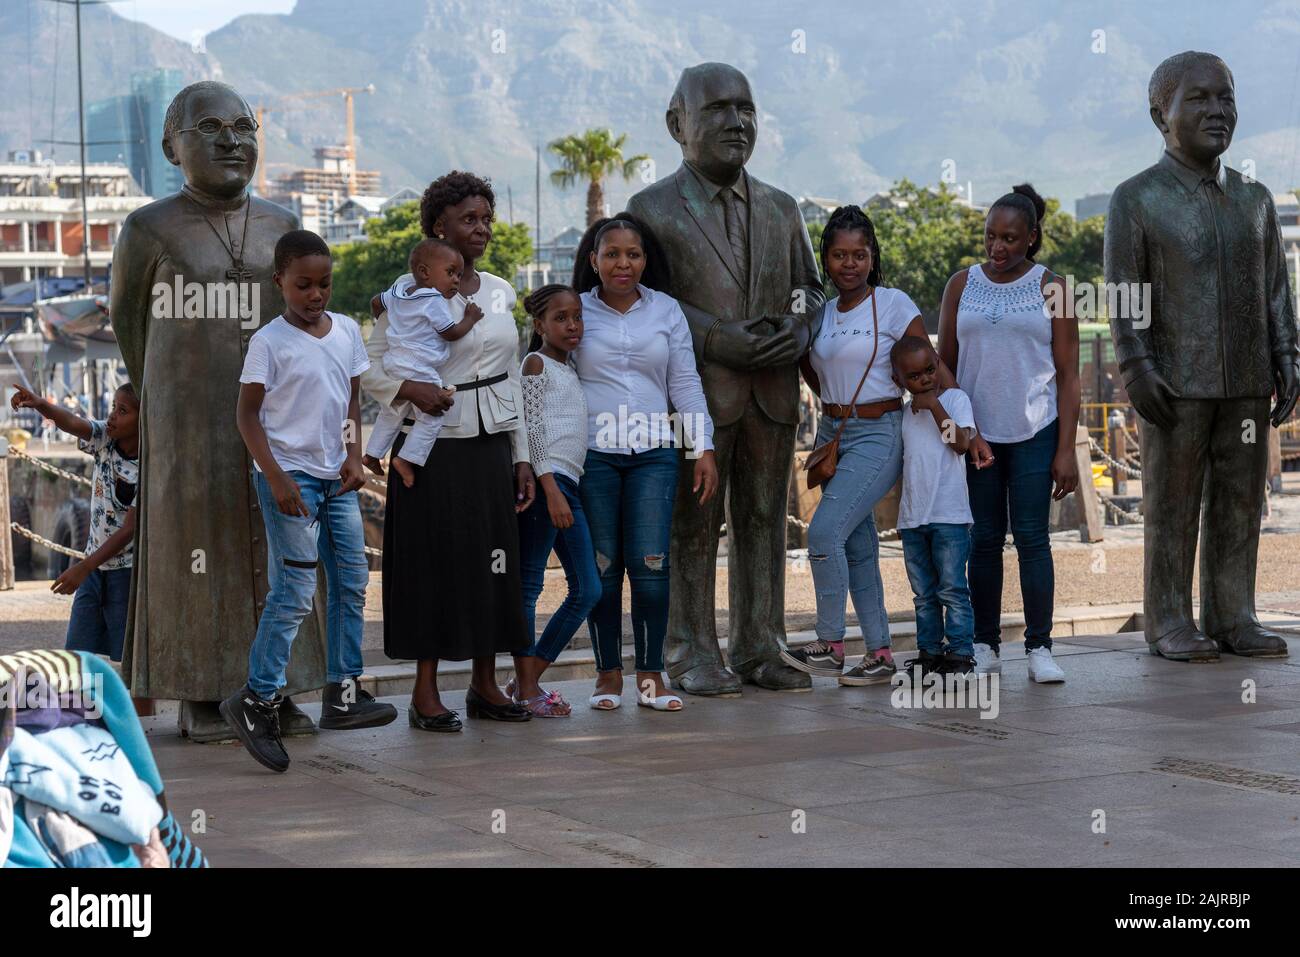 Kapstadt, Waterfront, Südafrika. Dezember 2019. Familie Mitglieder bei einem Besuch in Kapstadt Waterfront Bereich pose mit drei großen Südafrikaner. Stockfoto